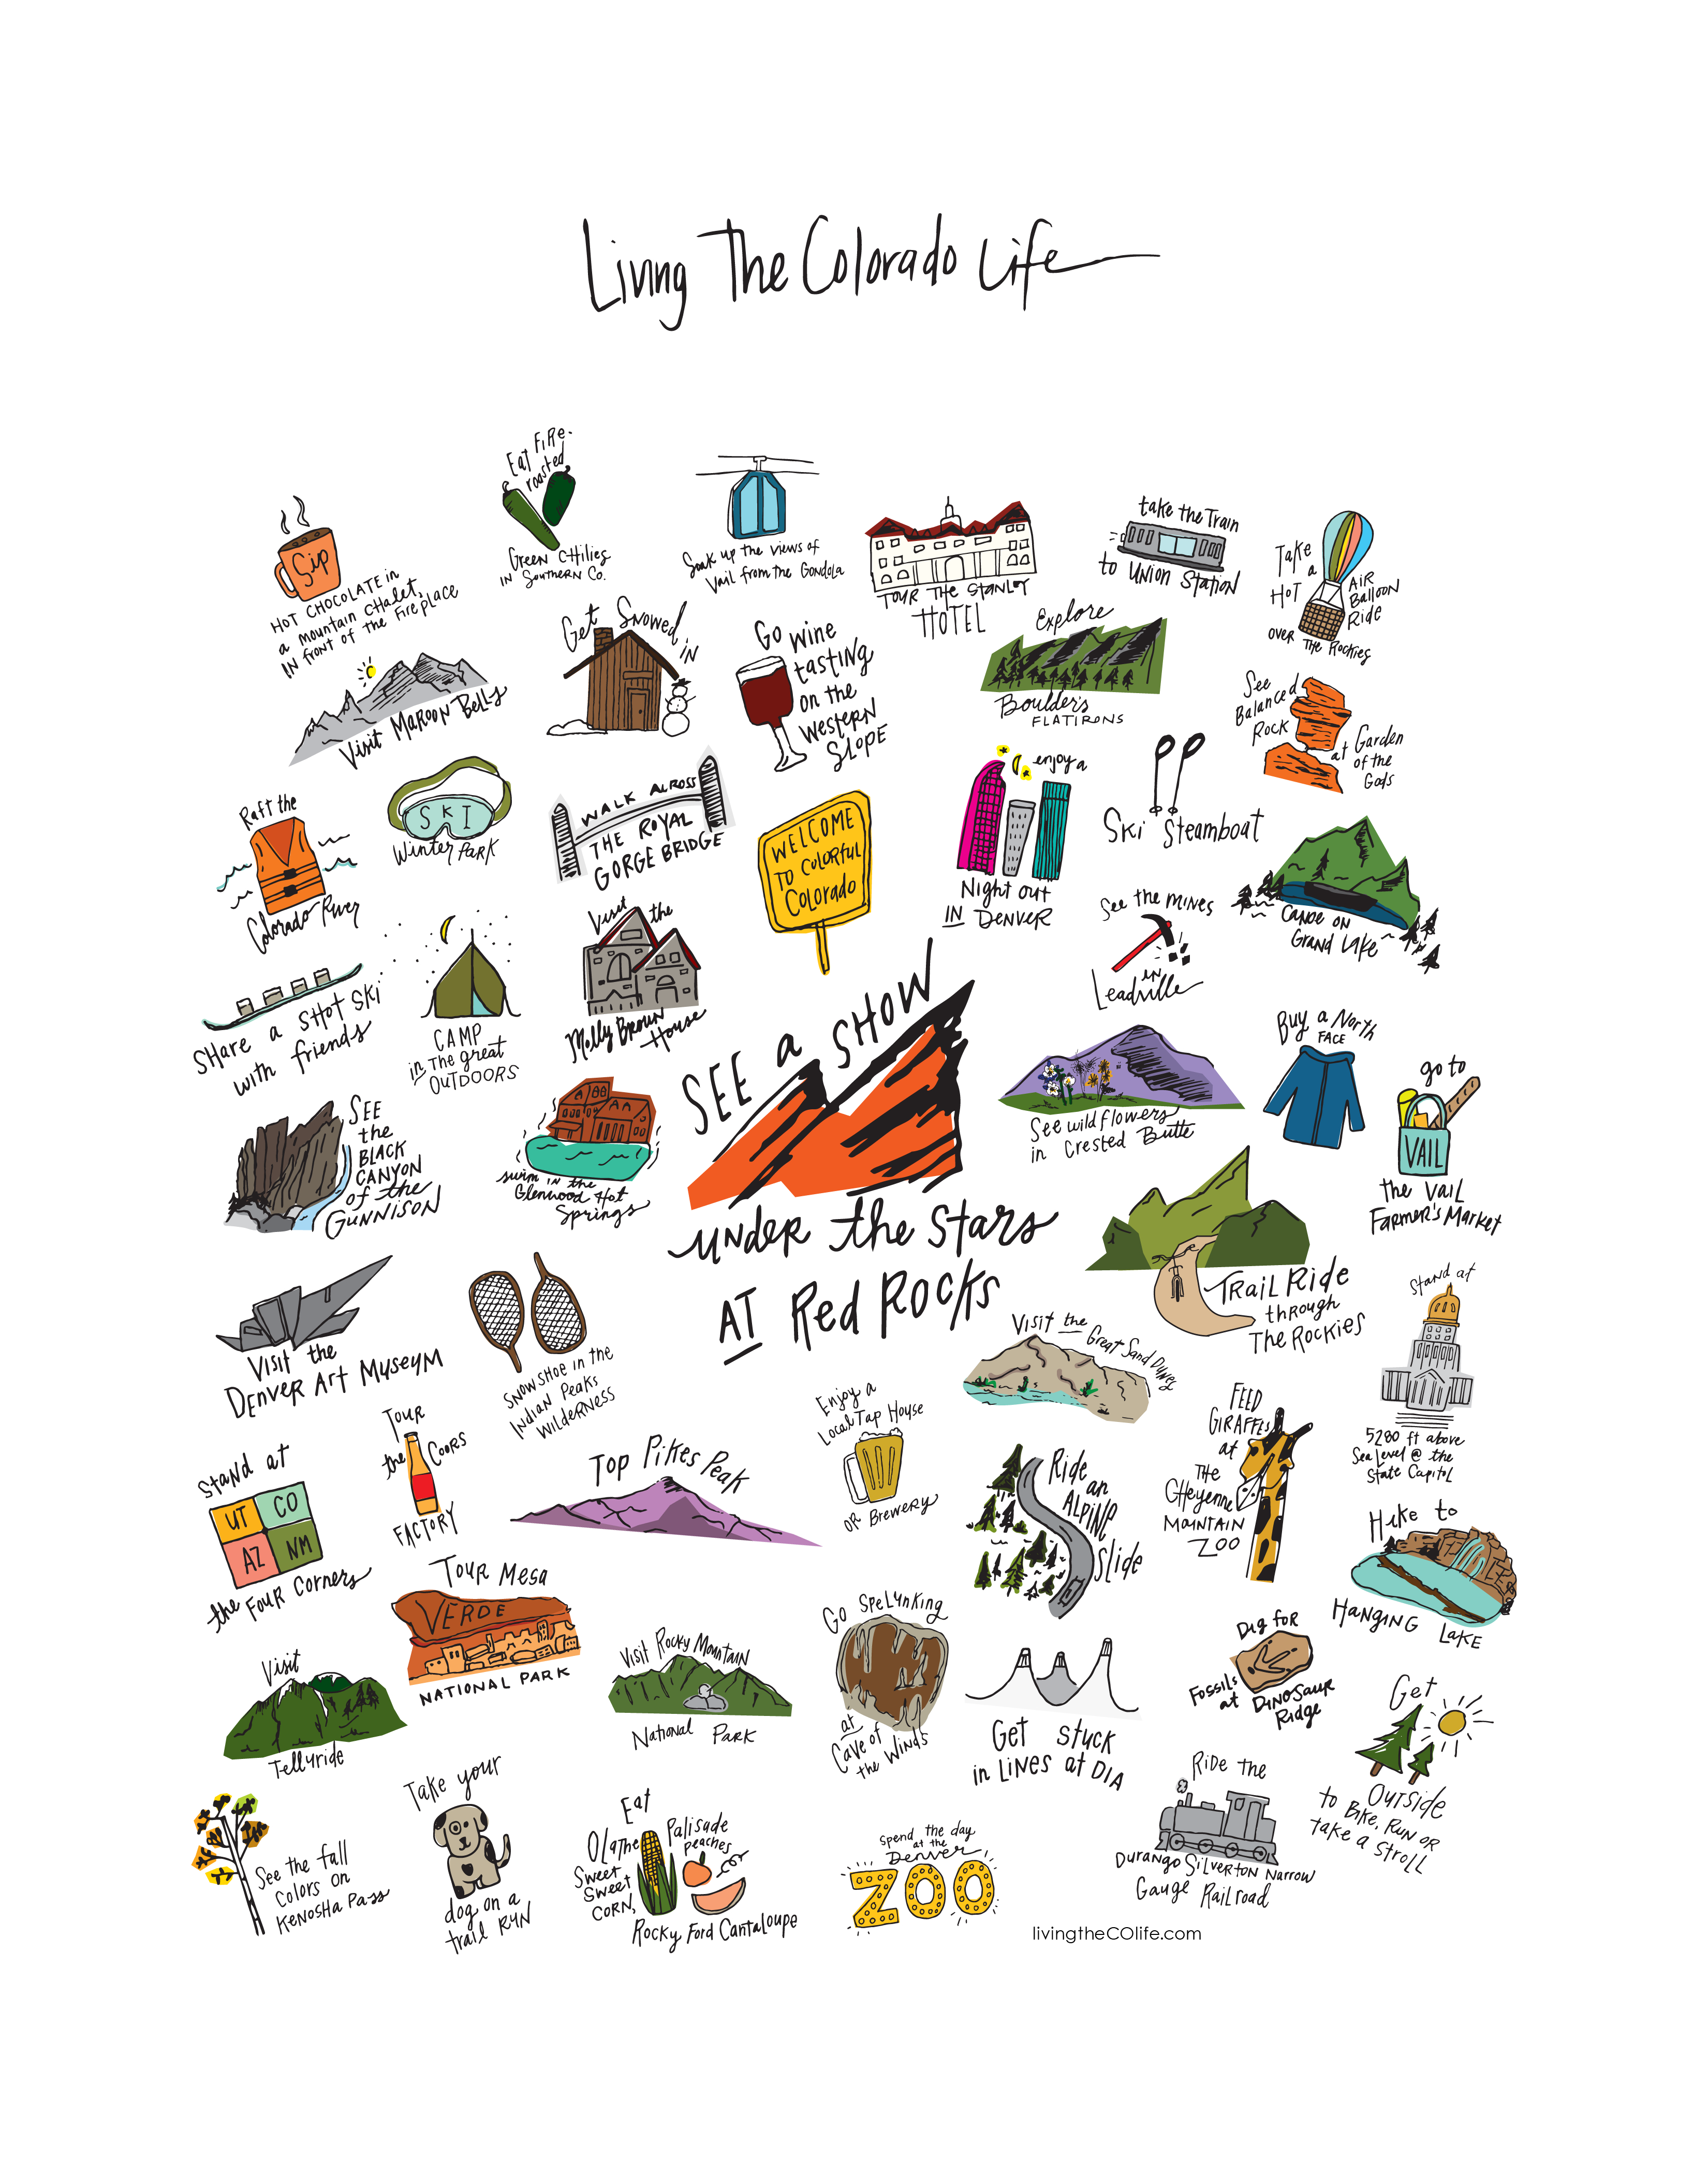 11x14 print - Living the Colorado Life